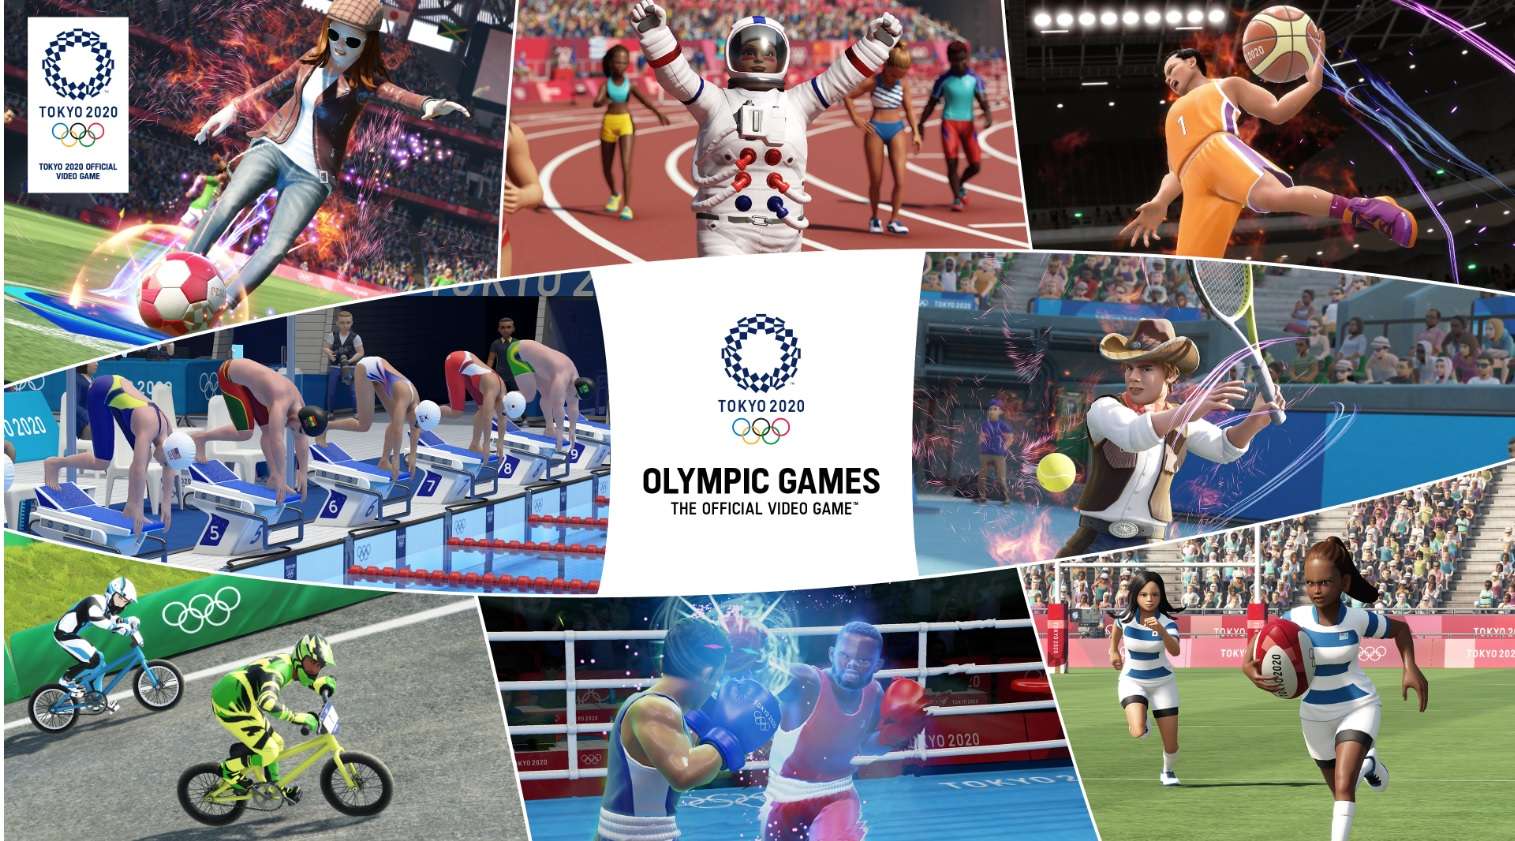 Los Juegos Olímpicos Tokio 2020 – El Videojuego Oficial